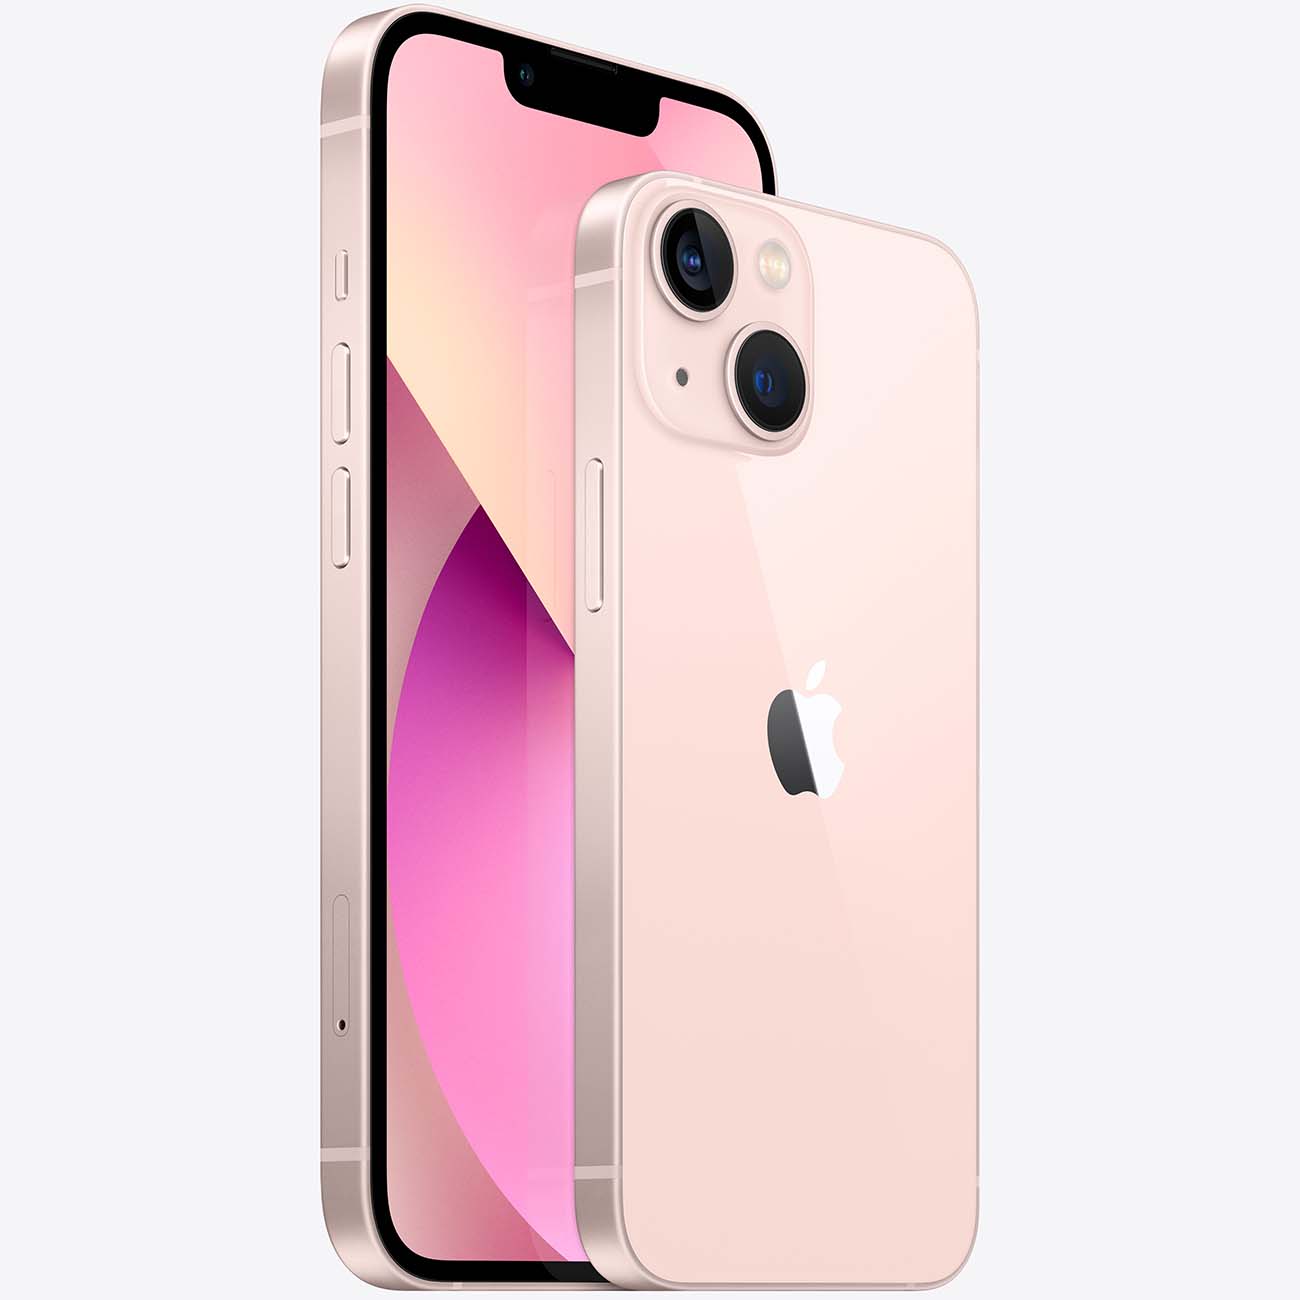 Купить смартфон apple iphone 13 mini 256gb pink Apple iPhone 13 mini в официальном магазине Apple, Samsung, Xiaomi. iPixel.ru Купить, заказ, кредит, рассрочка, отзывы,  характеристики, цена,  фотографии, в подарок.